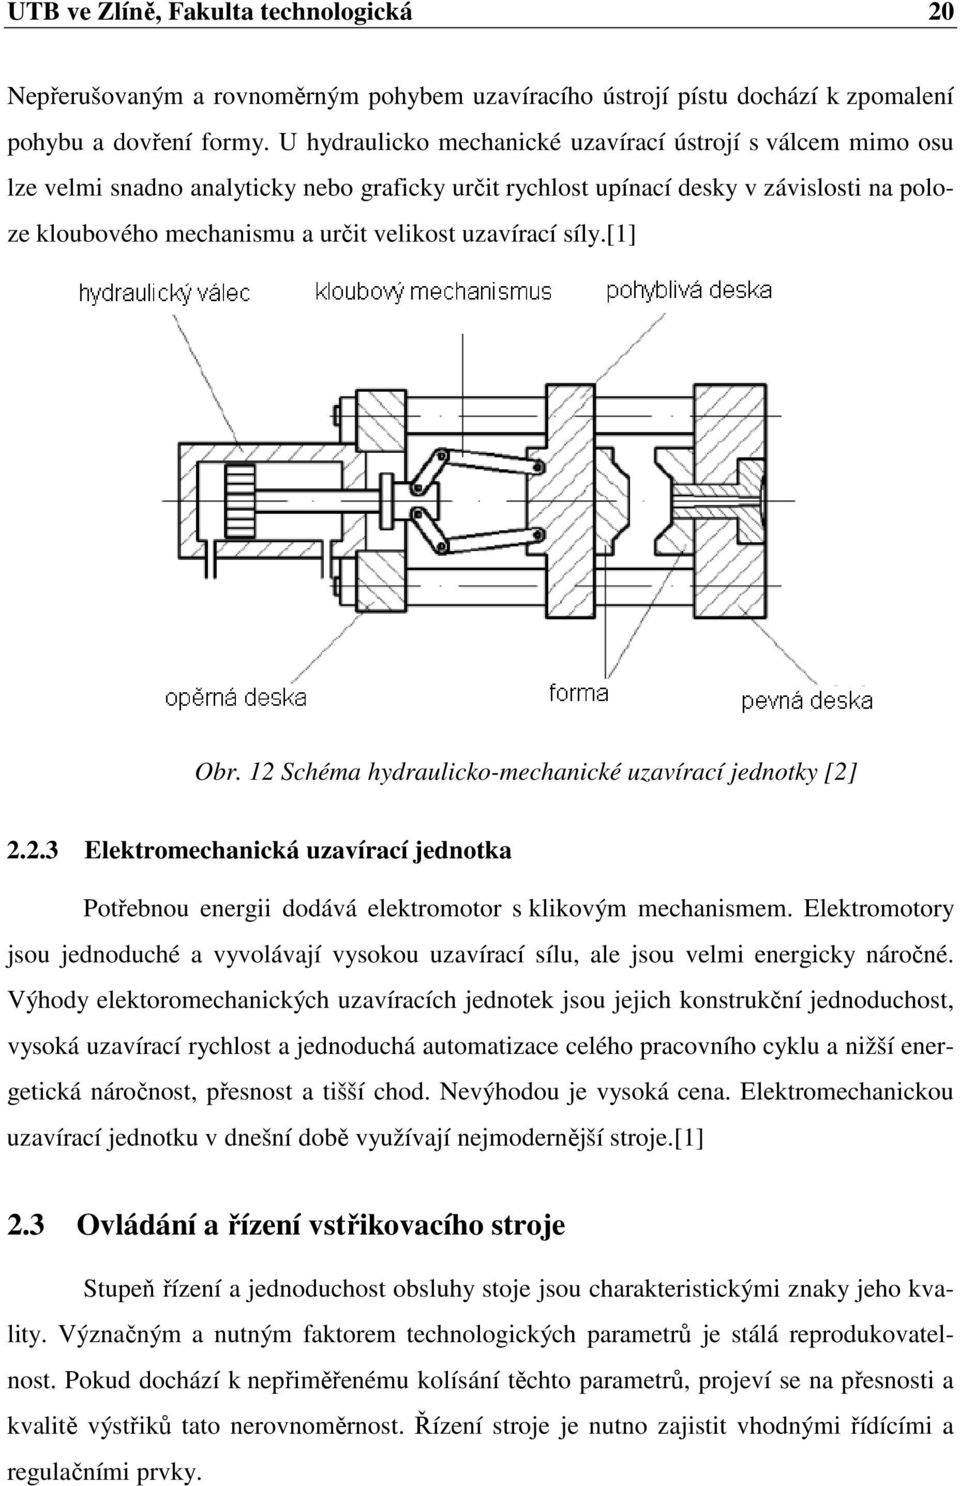 uzavírací síly.[1] Obr. 12 Schéma hydraulicko-mechanické uzavírací jednotky [2] 2.2.3 Elektromechanická uzavírací jednotka Potřebnou energii dodává elektromotor s klikovým mechanismem.